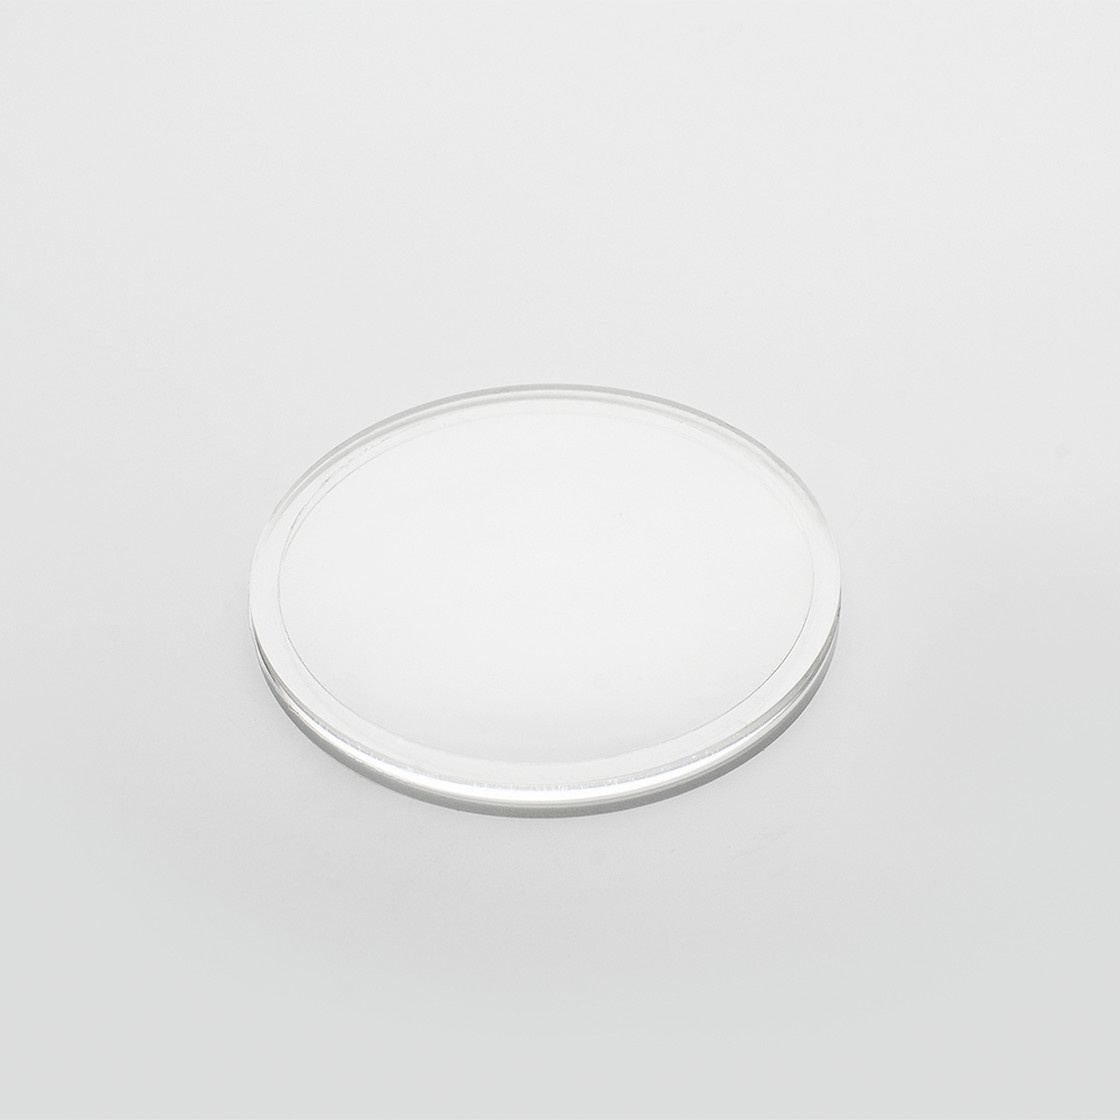 Lentille en verre acrylique Ø 34,5 mm, f +225 mm